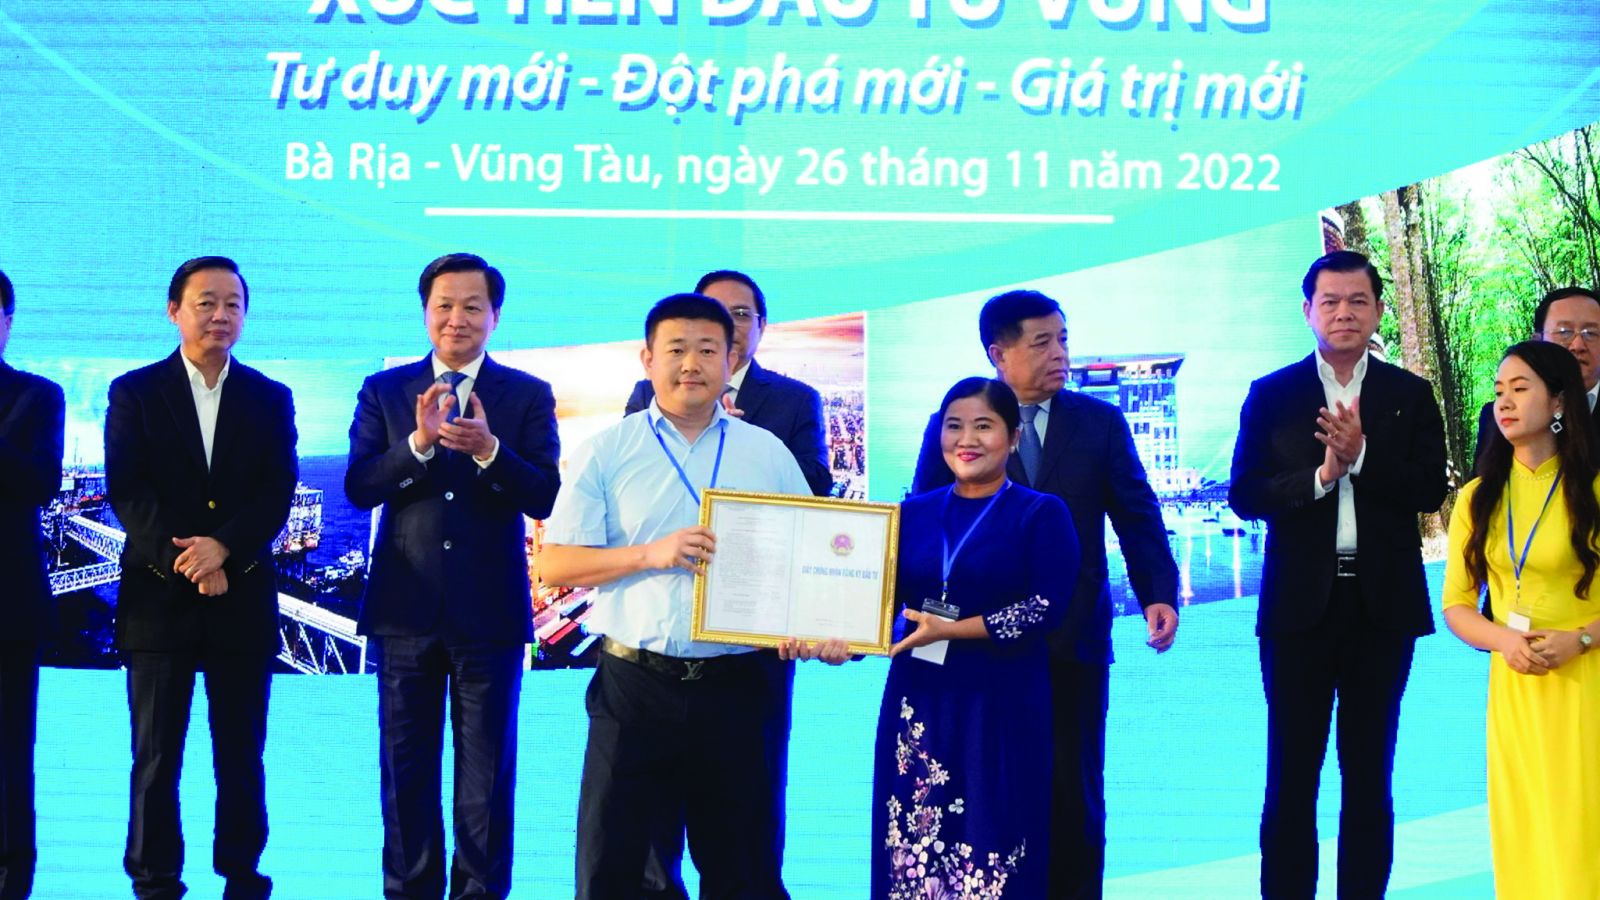  Chủ tịch UBND tỉnh Bình Phước trao chứng nhận đầu tư cho dự án Nhà máy sản xuất đá thạch anh, đá nhân tạo của Công ty TNHH Công nghiệp AUREA)